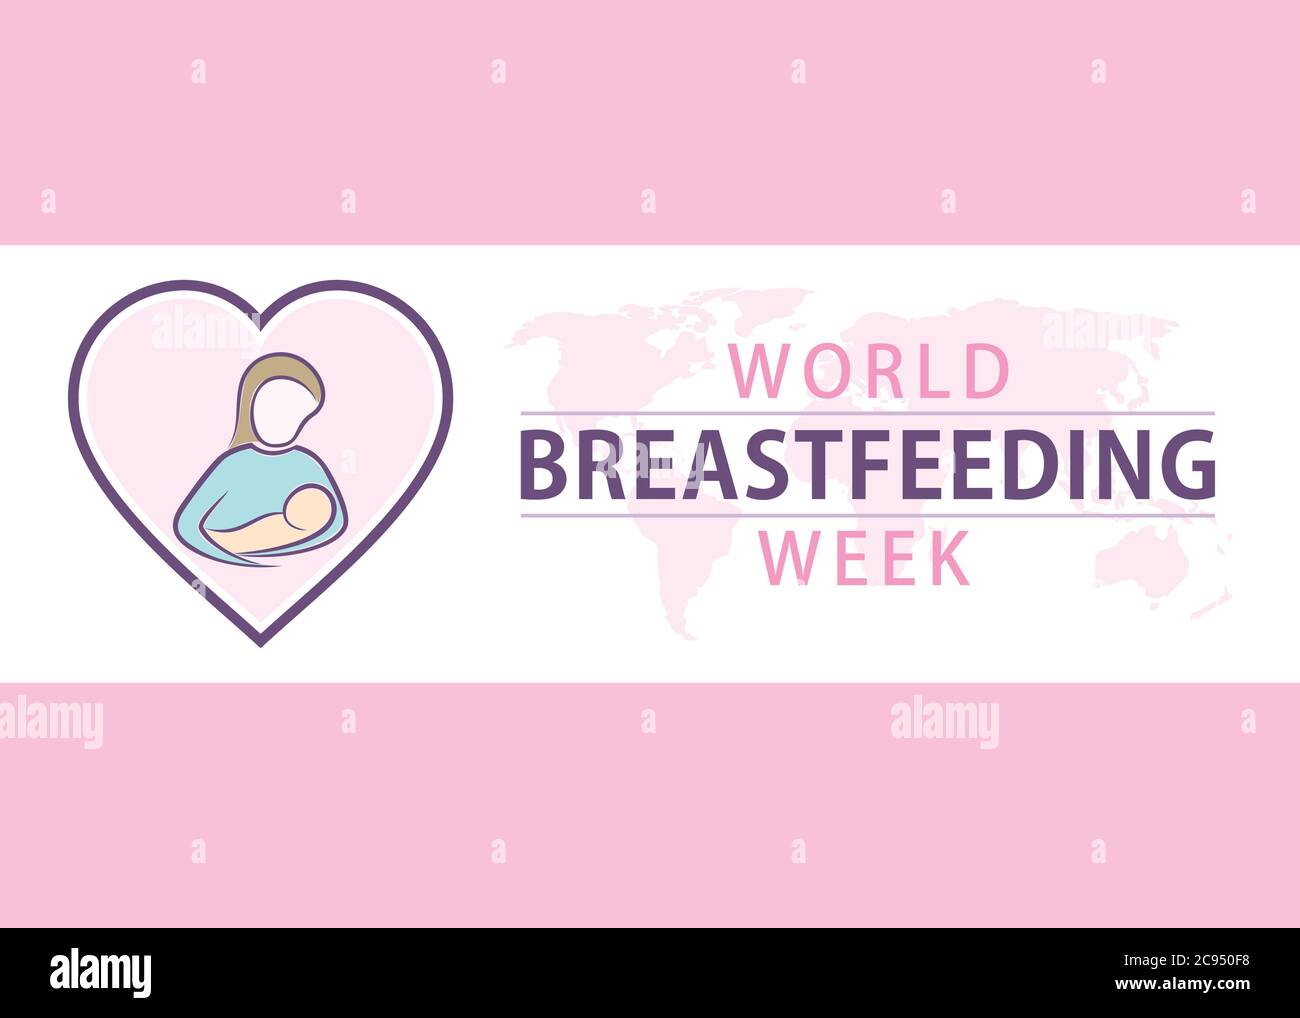 la semaine mondiale de l'allaitement se fête le 1-7 août chaque année Illustration de Vecteur